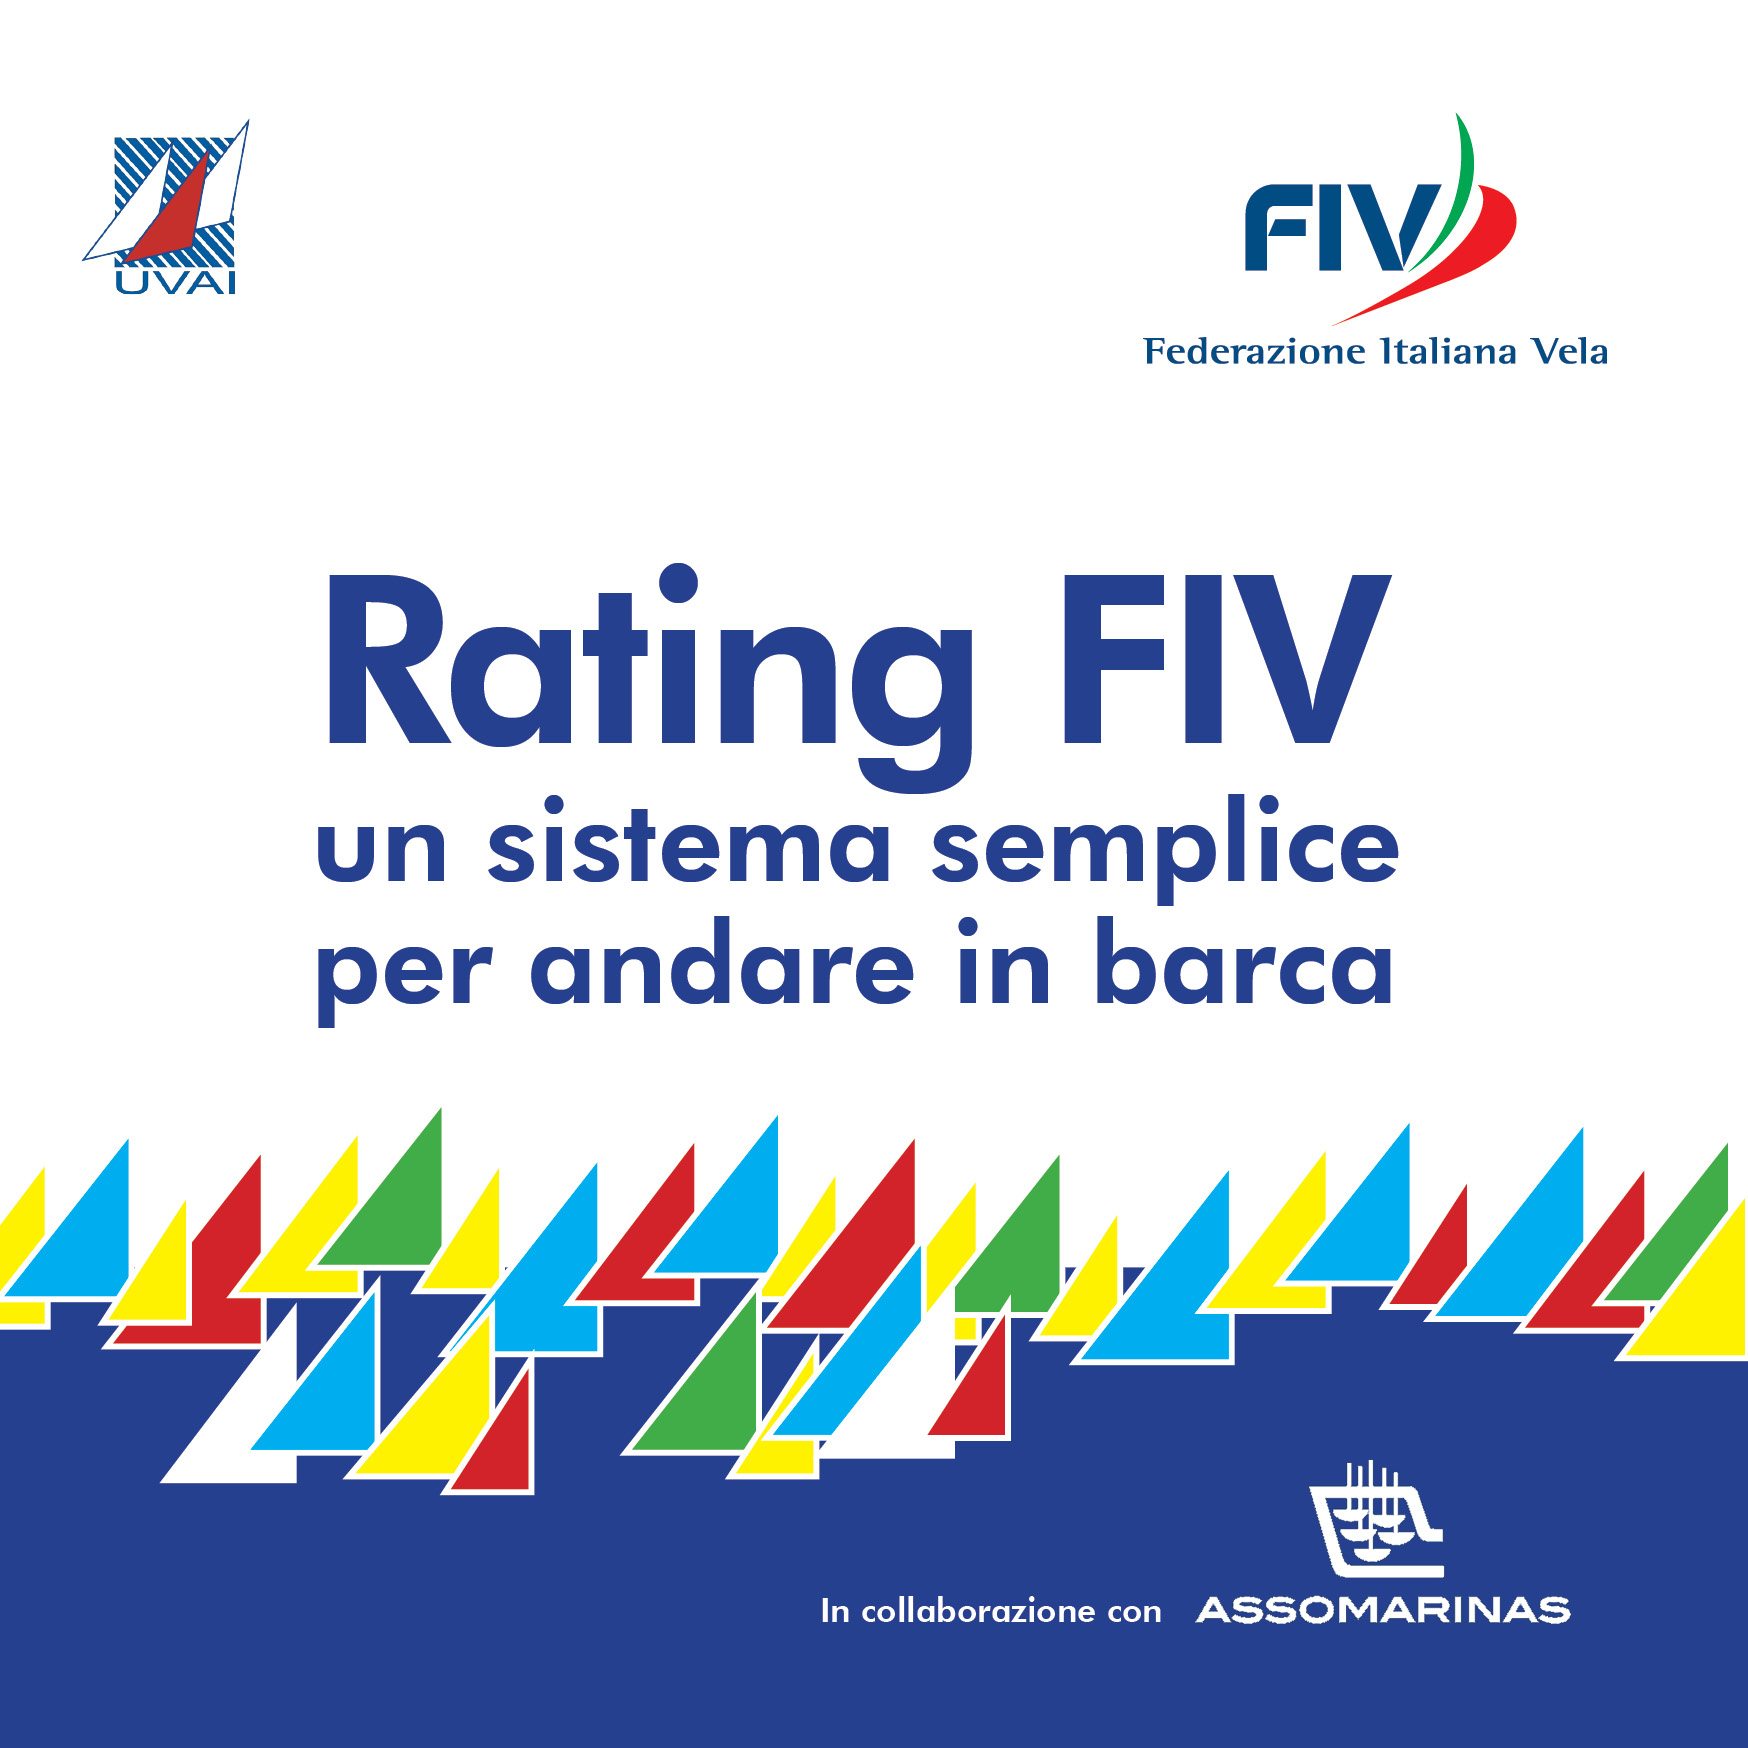 images/fiv/rating_fiv.jpg